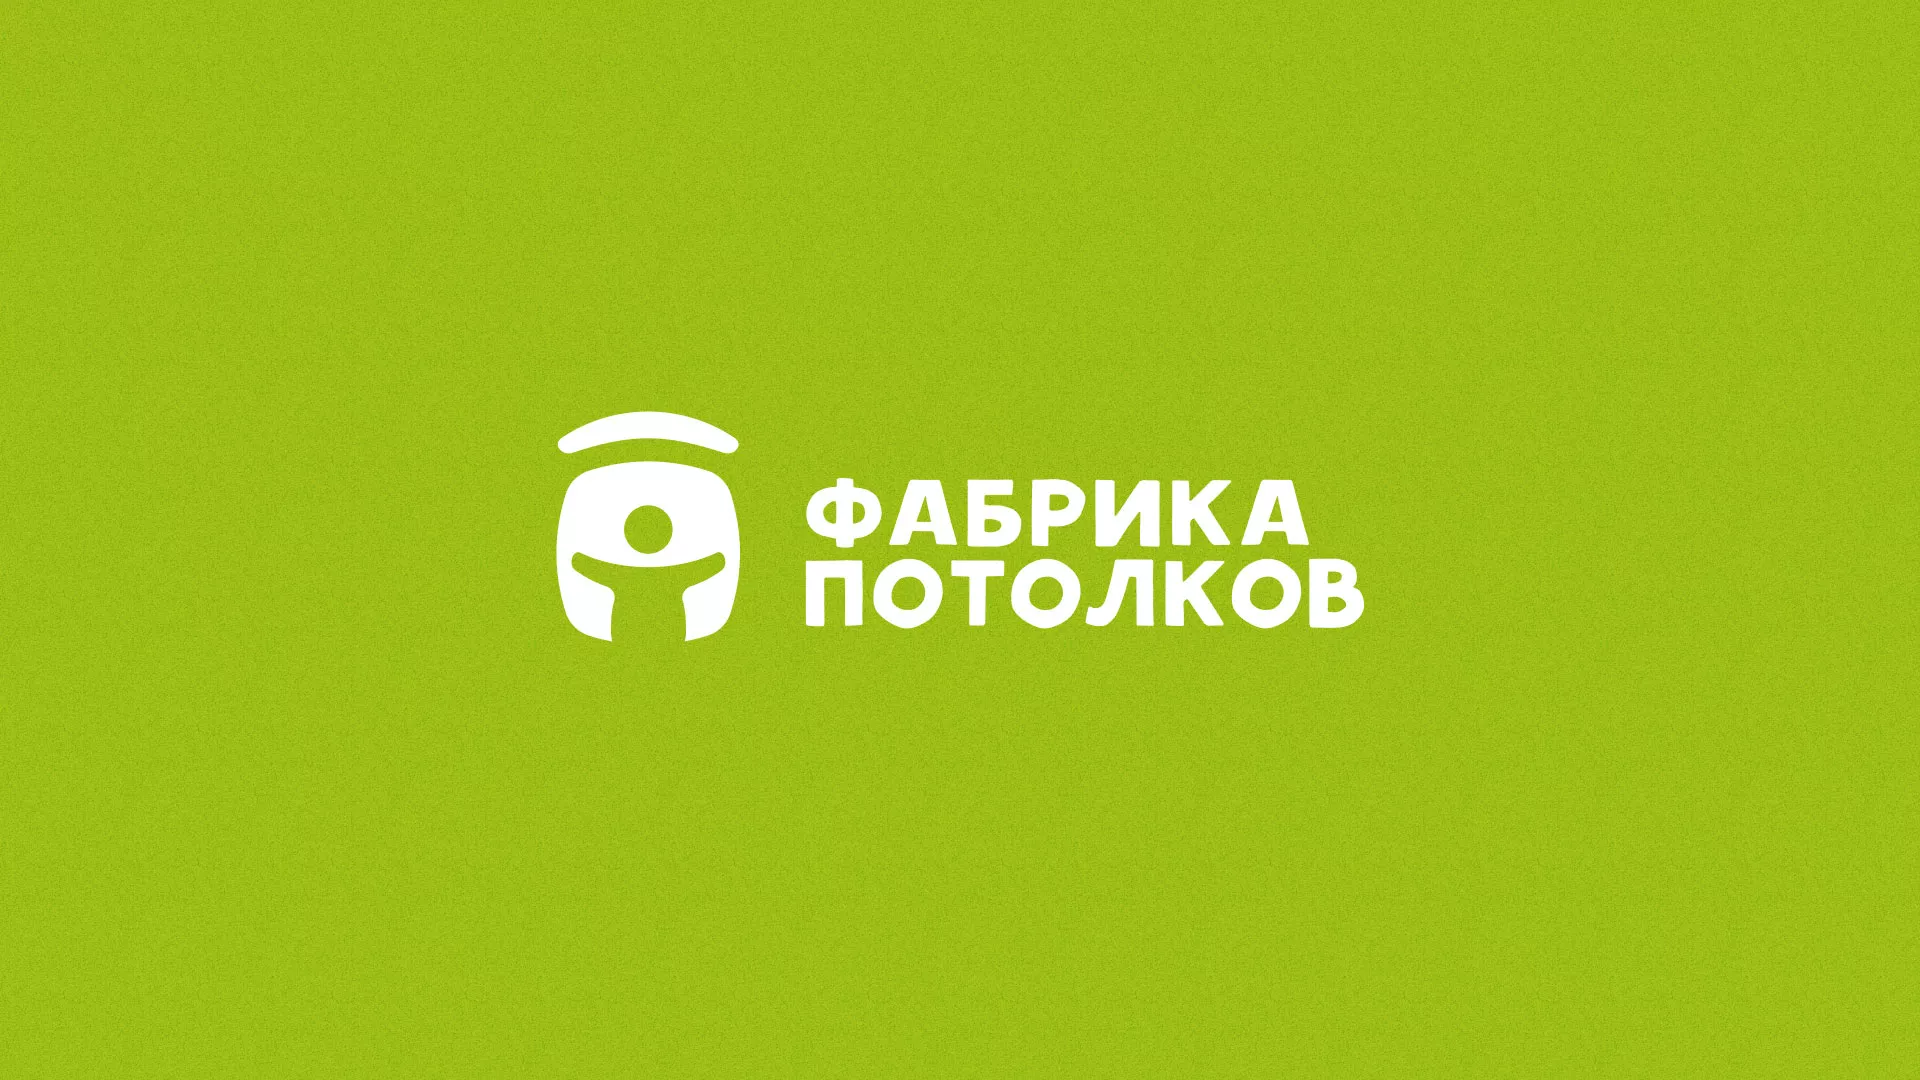 Разработка логотипа для производства натяжных потолков в Брянске